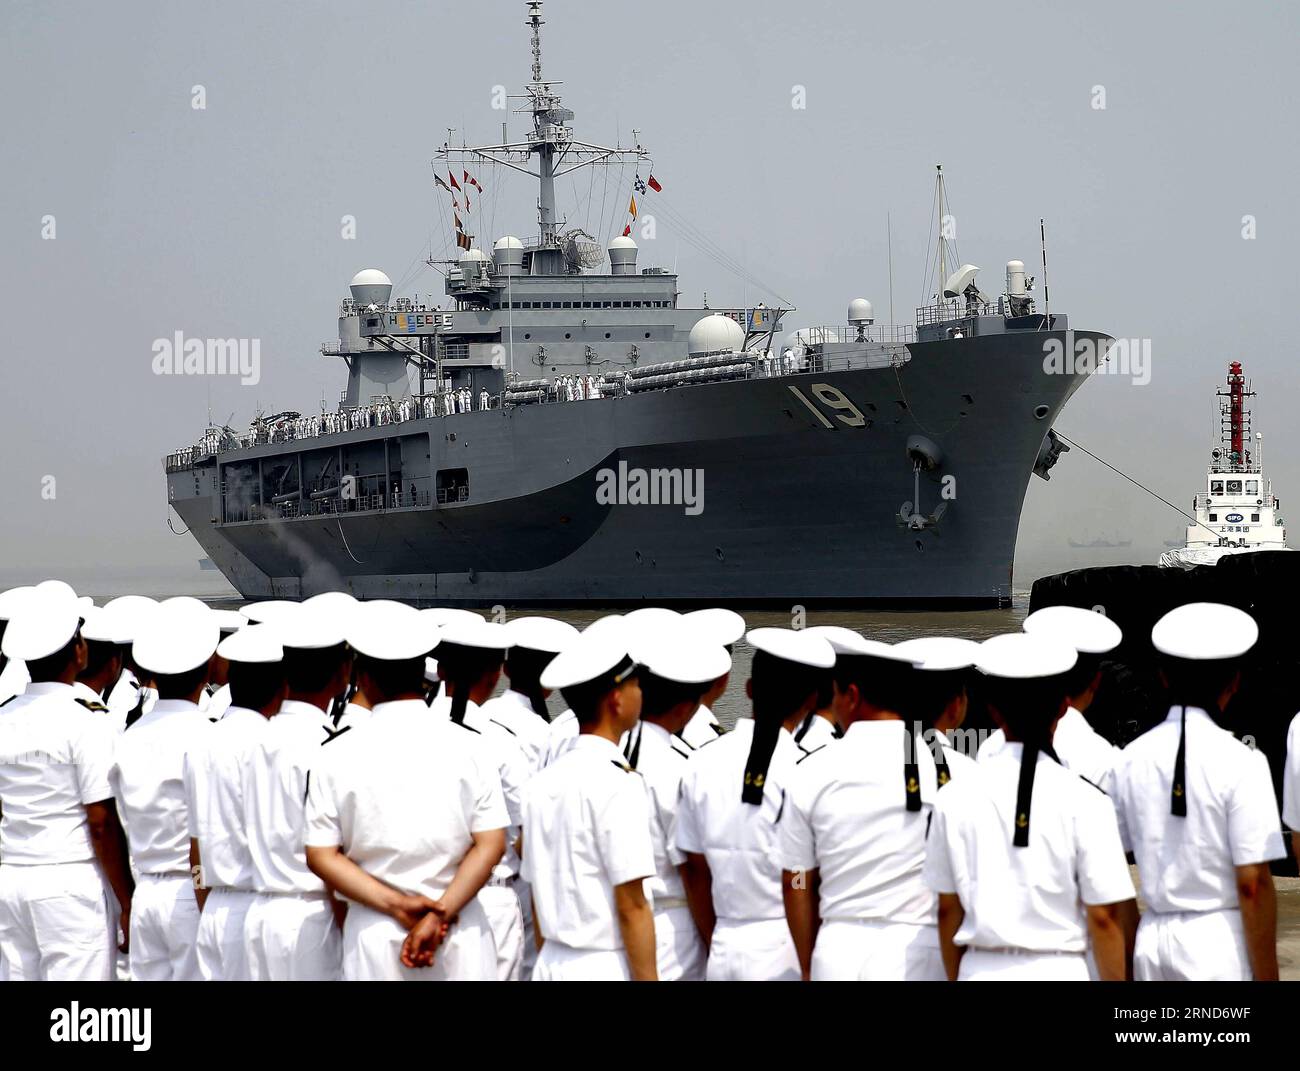 Das Flaggschiff USS Blue Ridge der Siebten Flotte der US Navy nähert sich dem Militärhafen Wusong in Shanghai, Ostchina, 6. Mai 2016. Der Blue Ridge kam am Freitag in Shanghai für einen fünftägigen Besuch an. ) (Zkr) CHINA-SHANGHAI-US NAVY-VISIT(CN) ChenxFei PUBLICATIONxNOTxINxCHN das Flaggschiff USS Blue Ridge der Siebten Flotte der US Navy nähert sich dem Militärhafen Wusong in Shanghai Ostchina 6. Mai 2016 der Blaue Ridge kam am Freitag in Shanghai für einen fünftägigen Besuch CCR China Shanghai U.S. Navy Besuch CN ChenxFei an PUBLICATIONxNOTxINxCHN Stockfoto